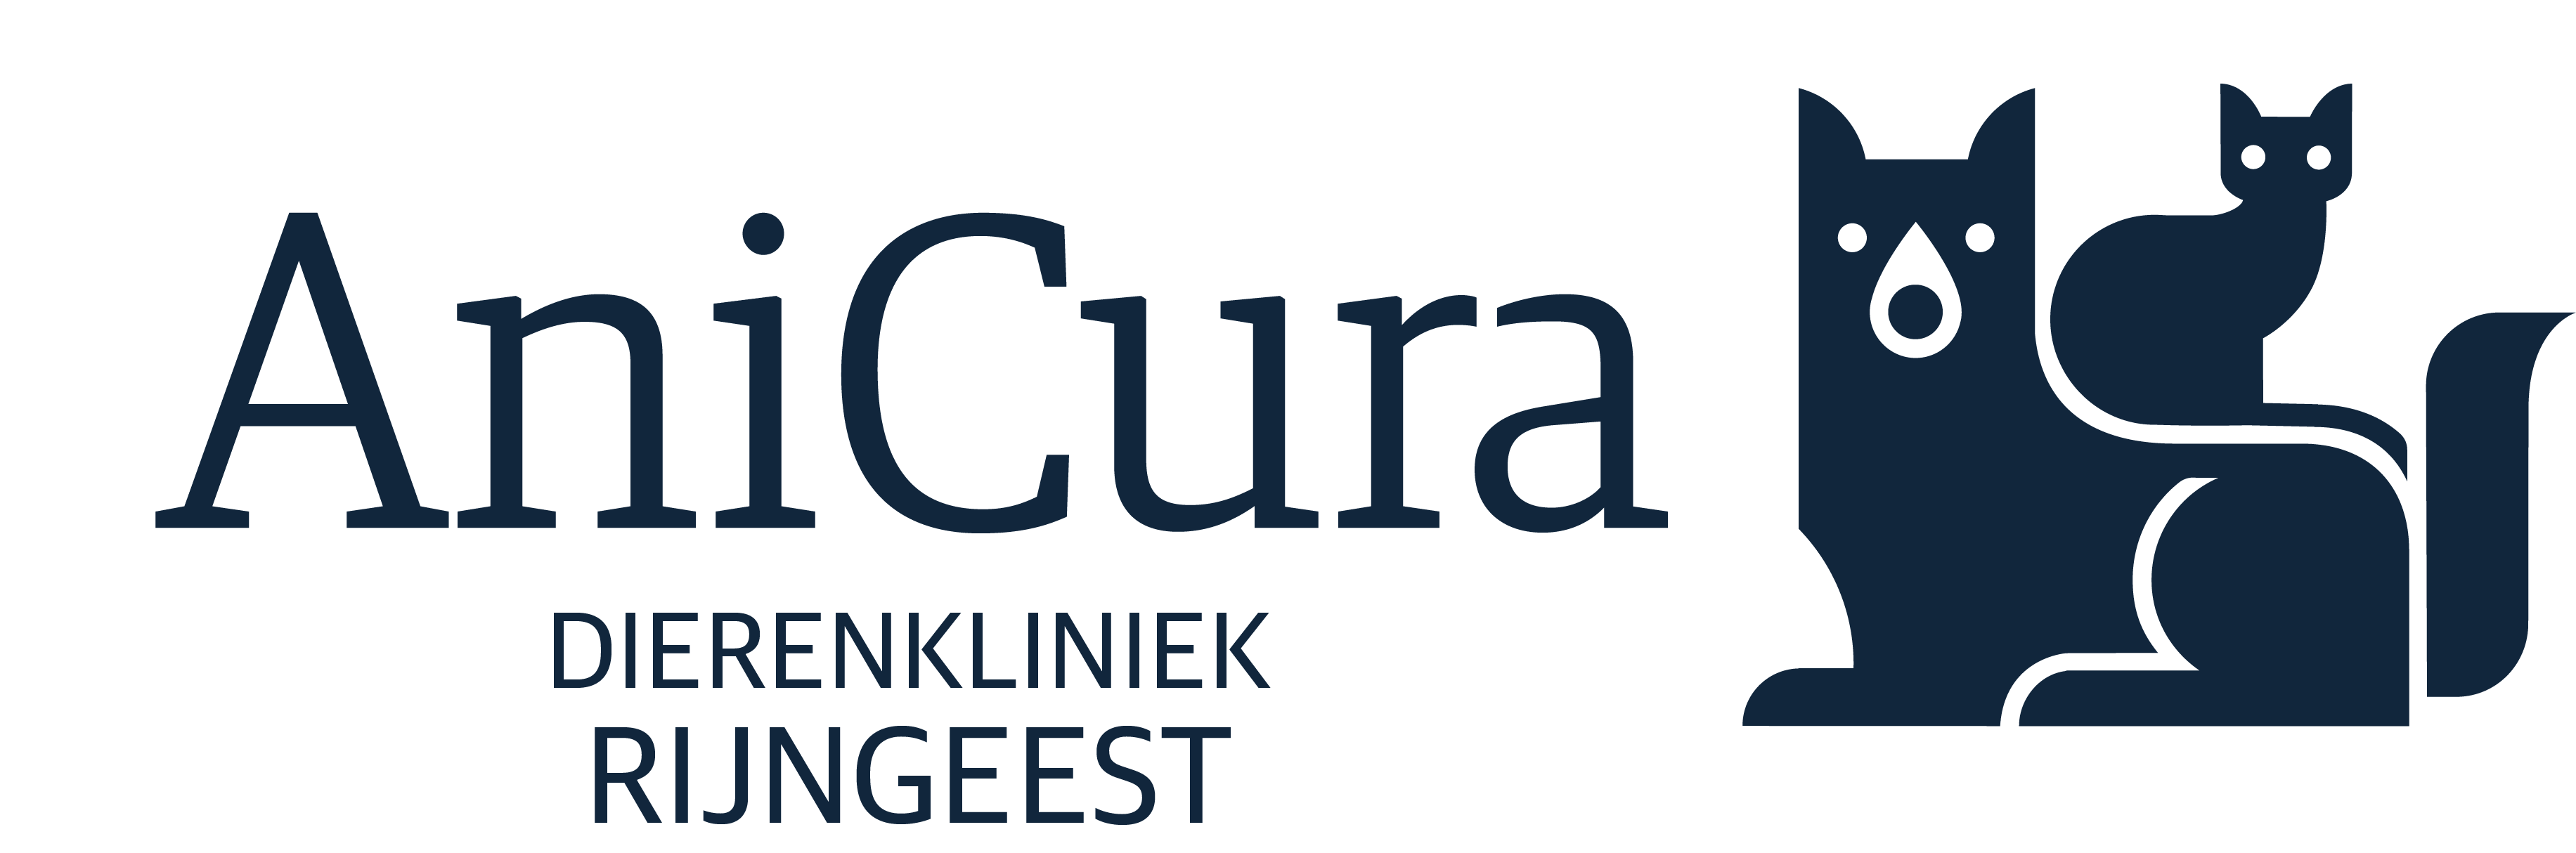 AniCura Noordwijk logo